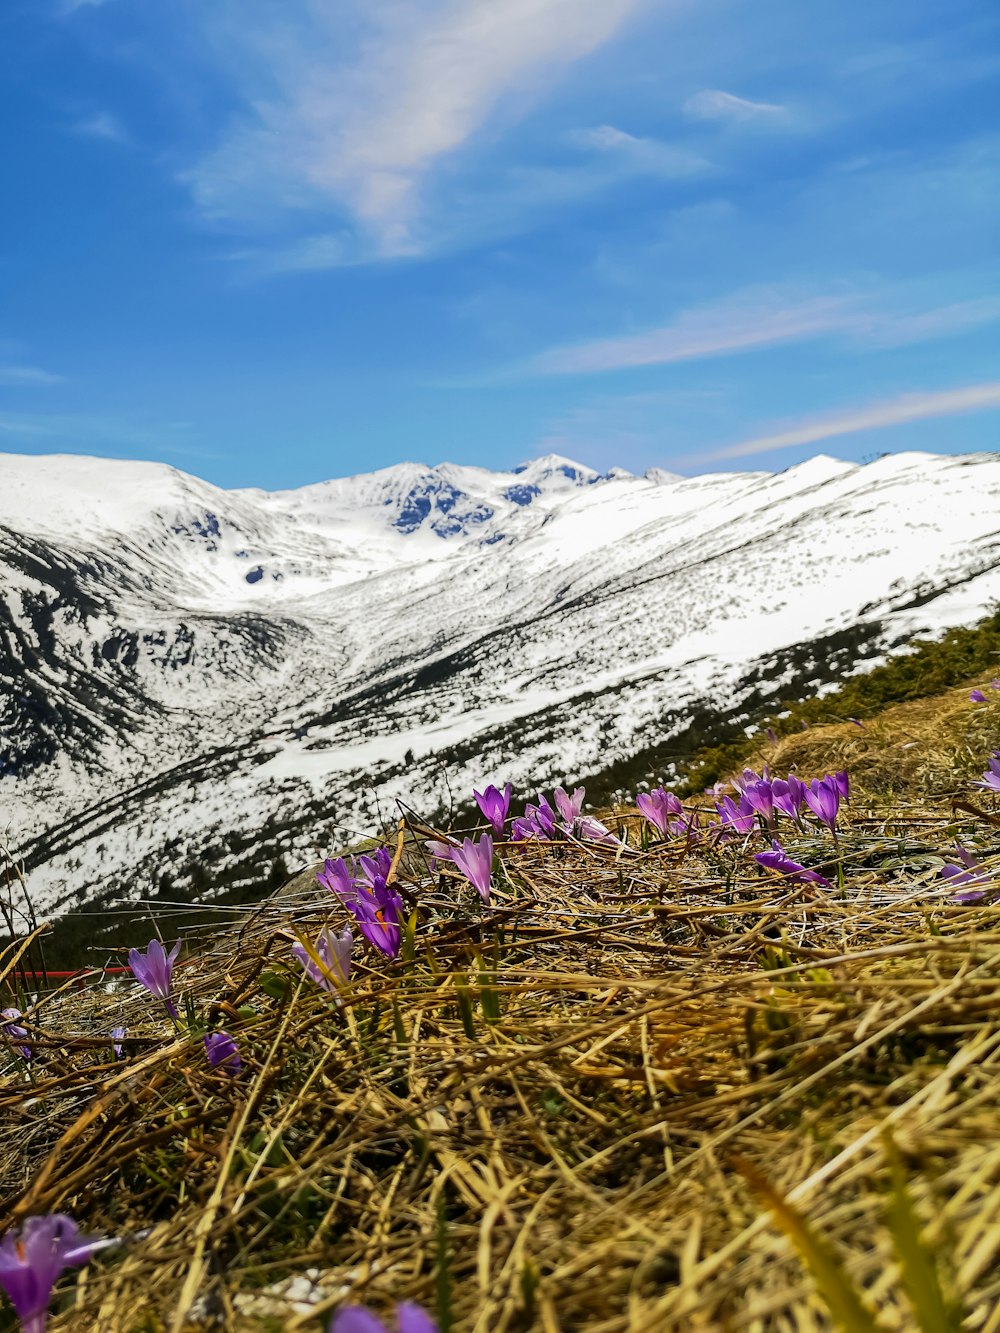 fiore viola sul campo di erba verde vicino alla montagna coperta di neve durante il giorno